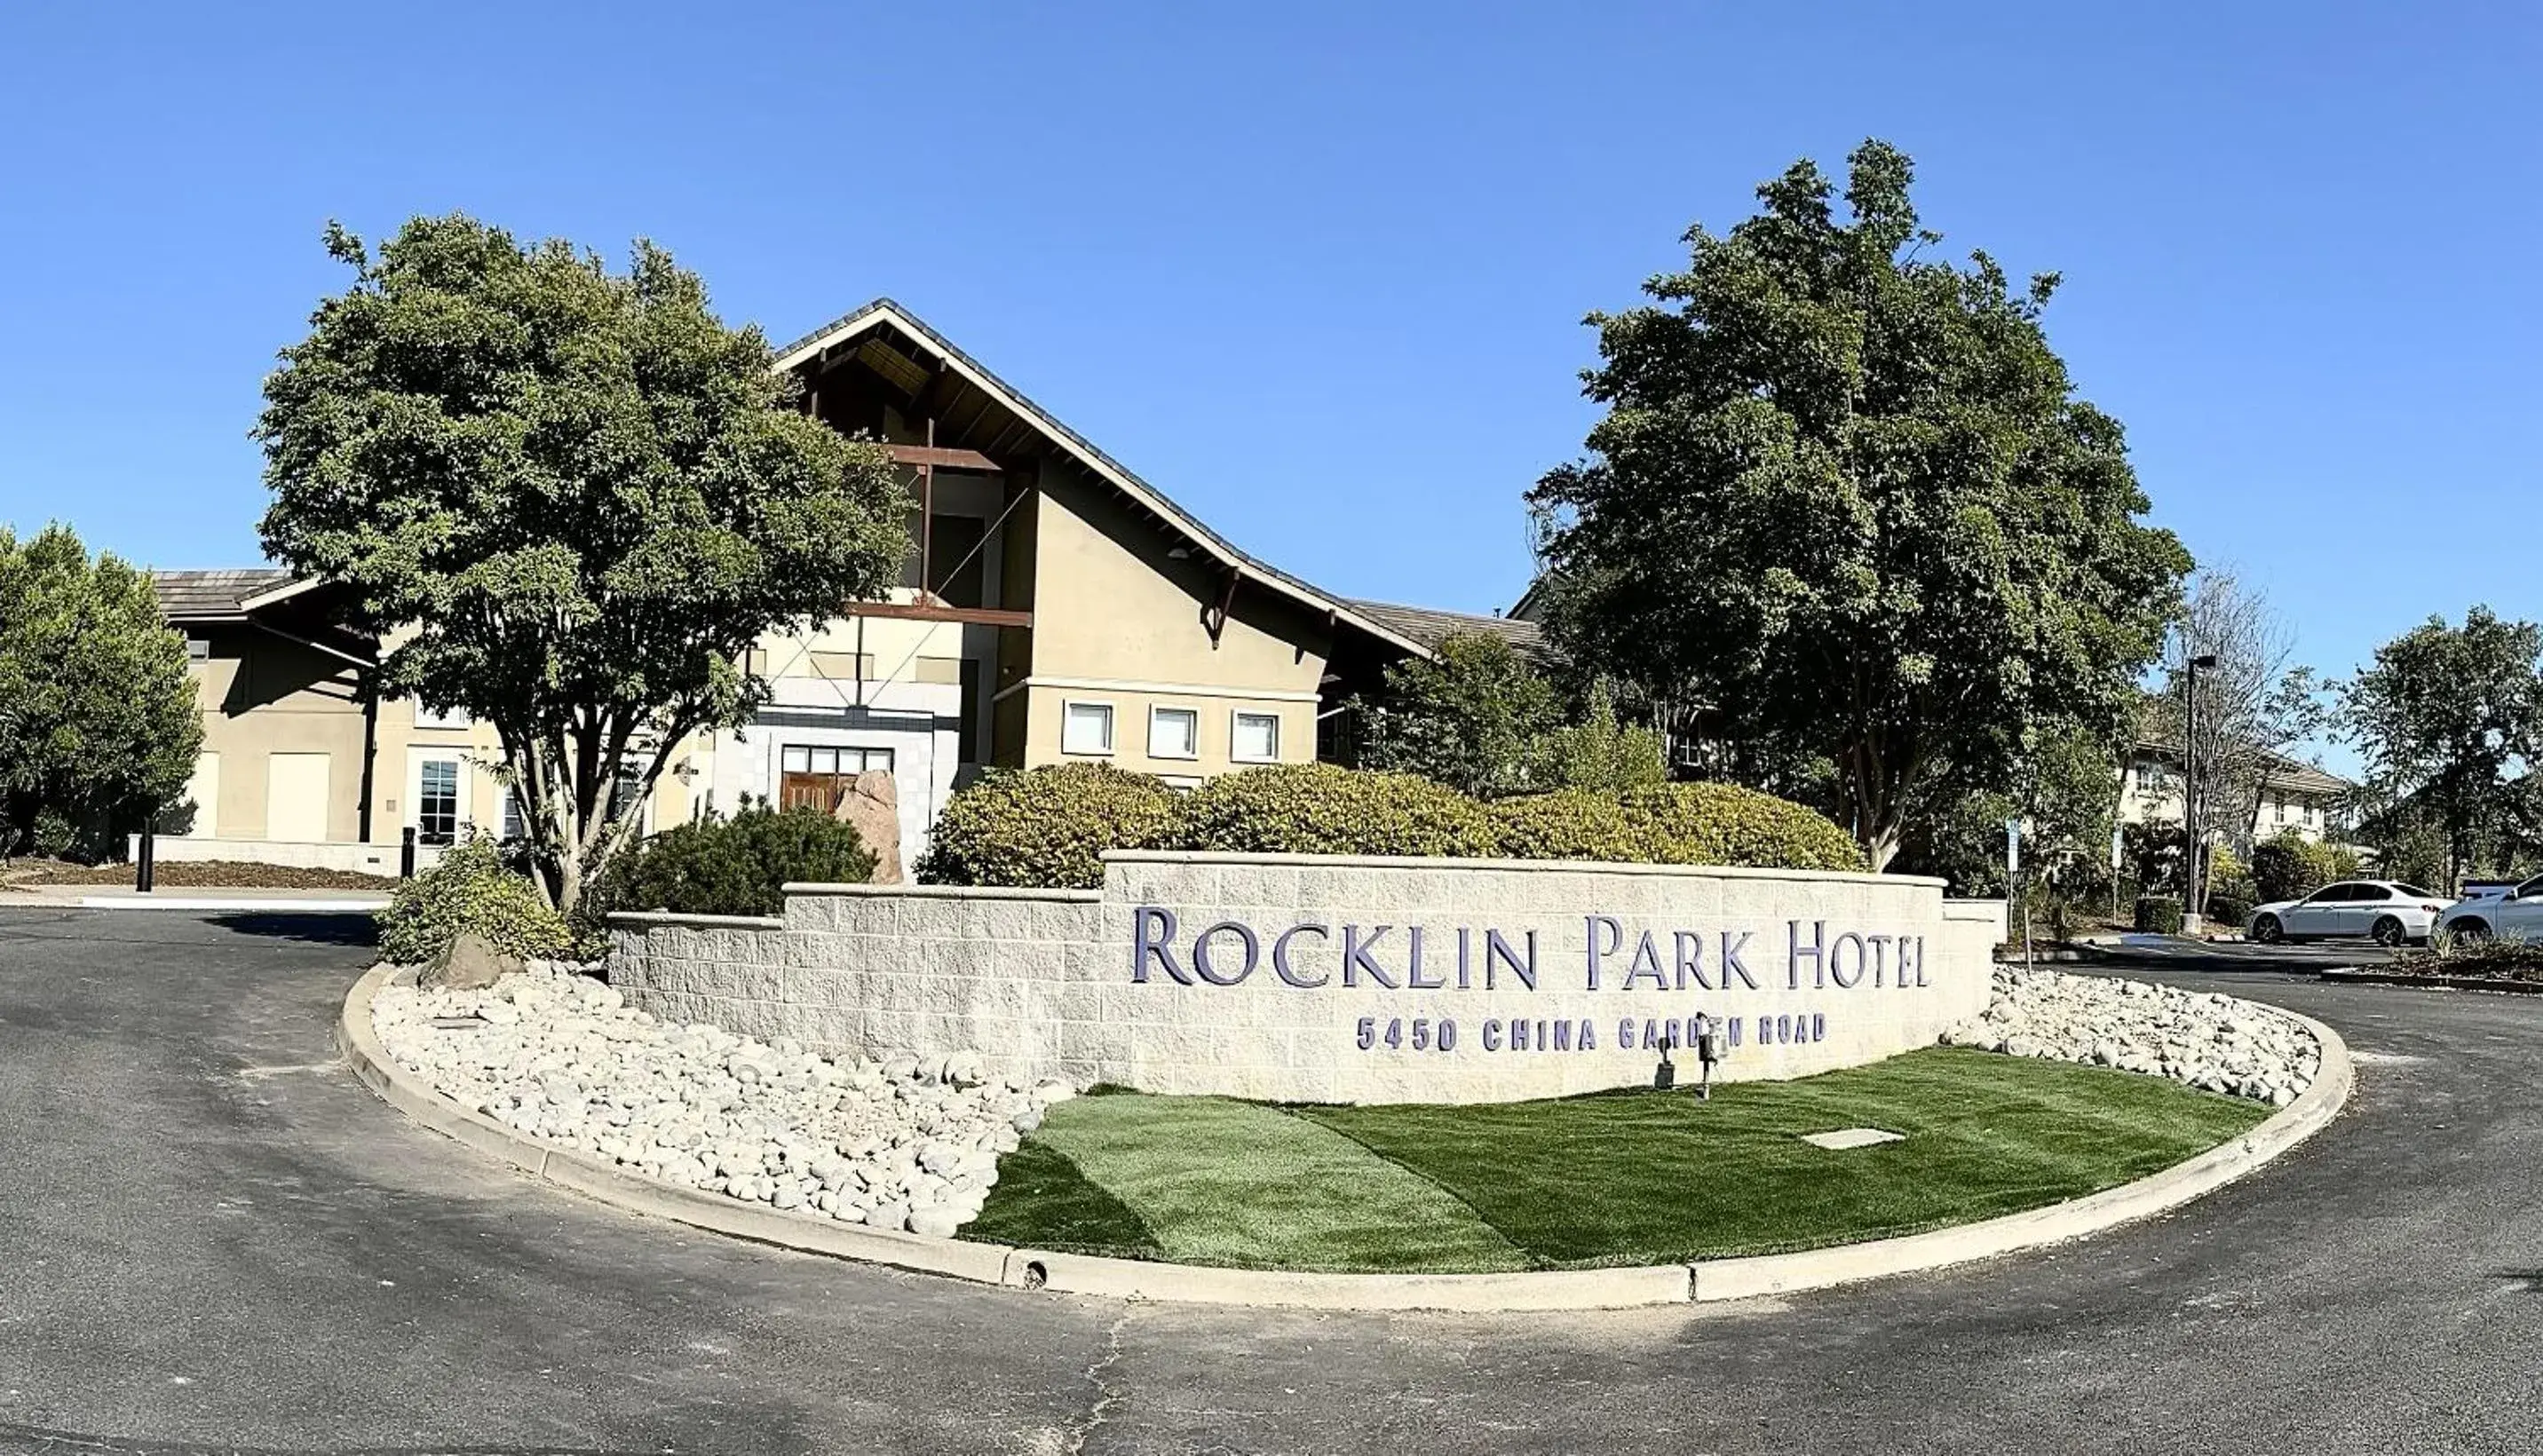 Property Building in Rocklin Park Hotel